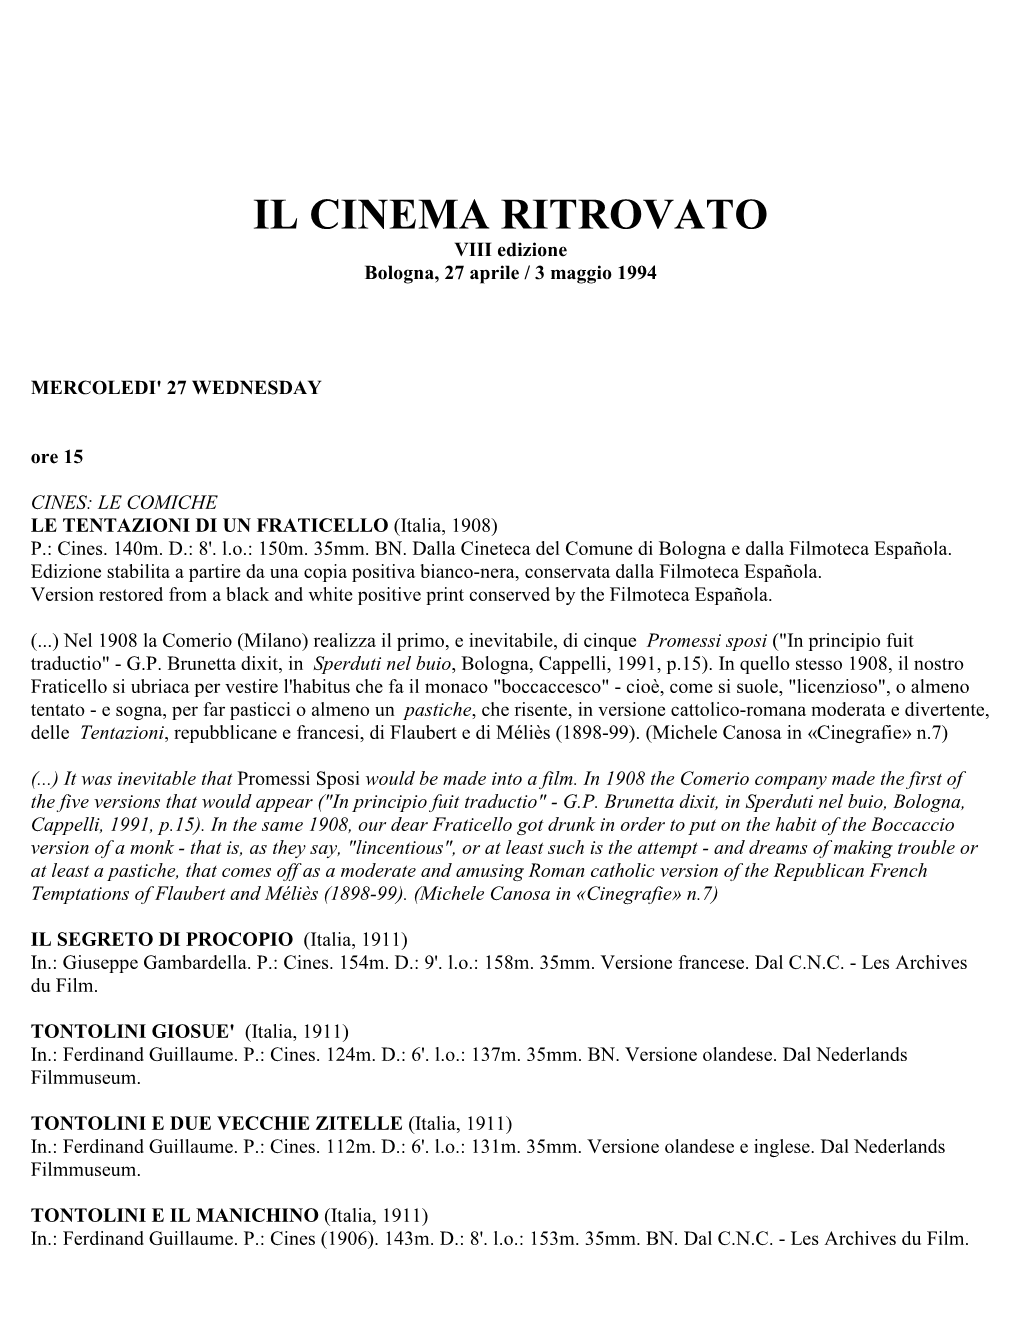 IL CINEMA RITROVATO VIII Edizione Bologna, 27 Aprile / 3 Maggio 1994